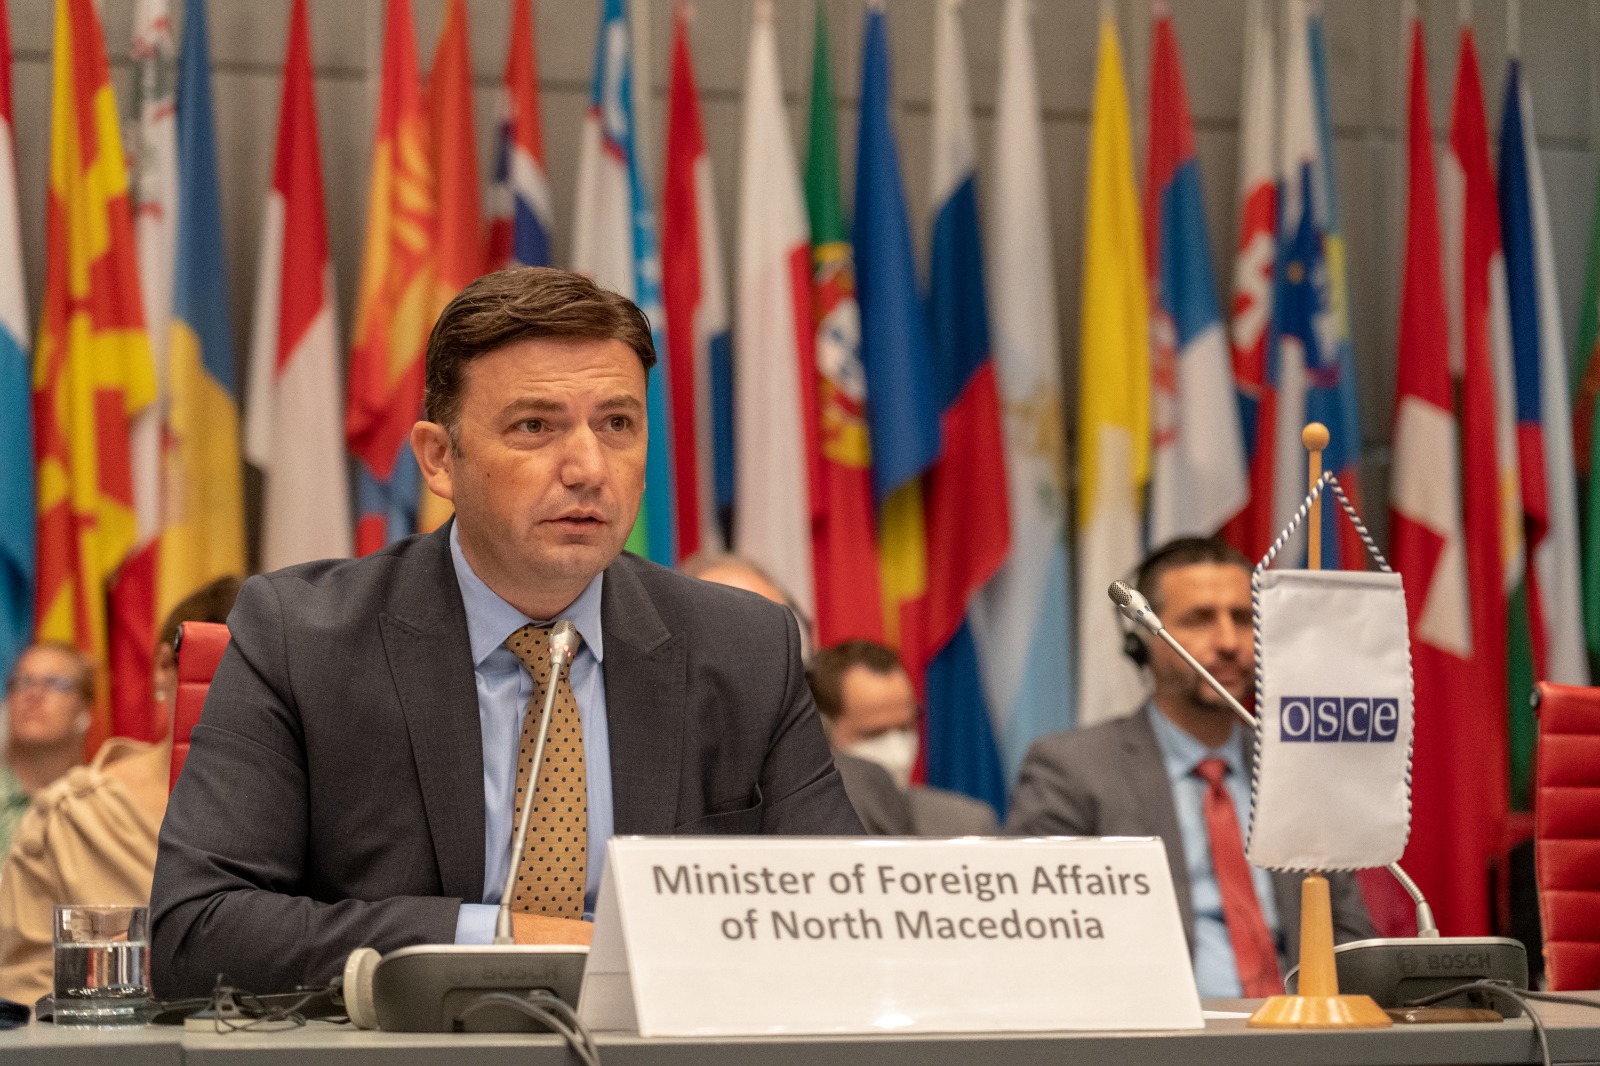 Ukrayna, K. Makedonya’nın AGİT dönem başkanlığı sırasında ana önceliklerden biri olacak